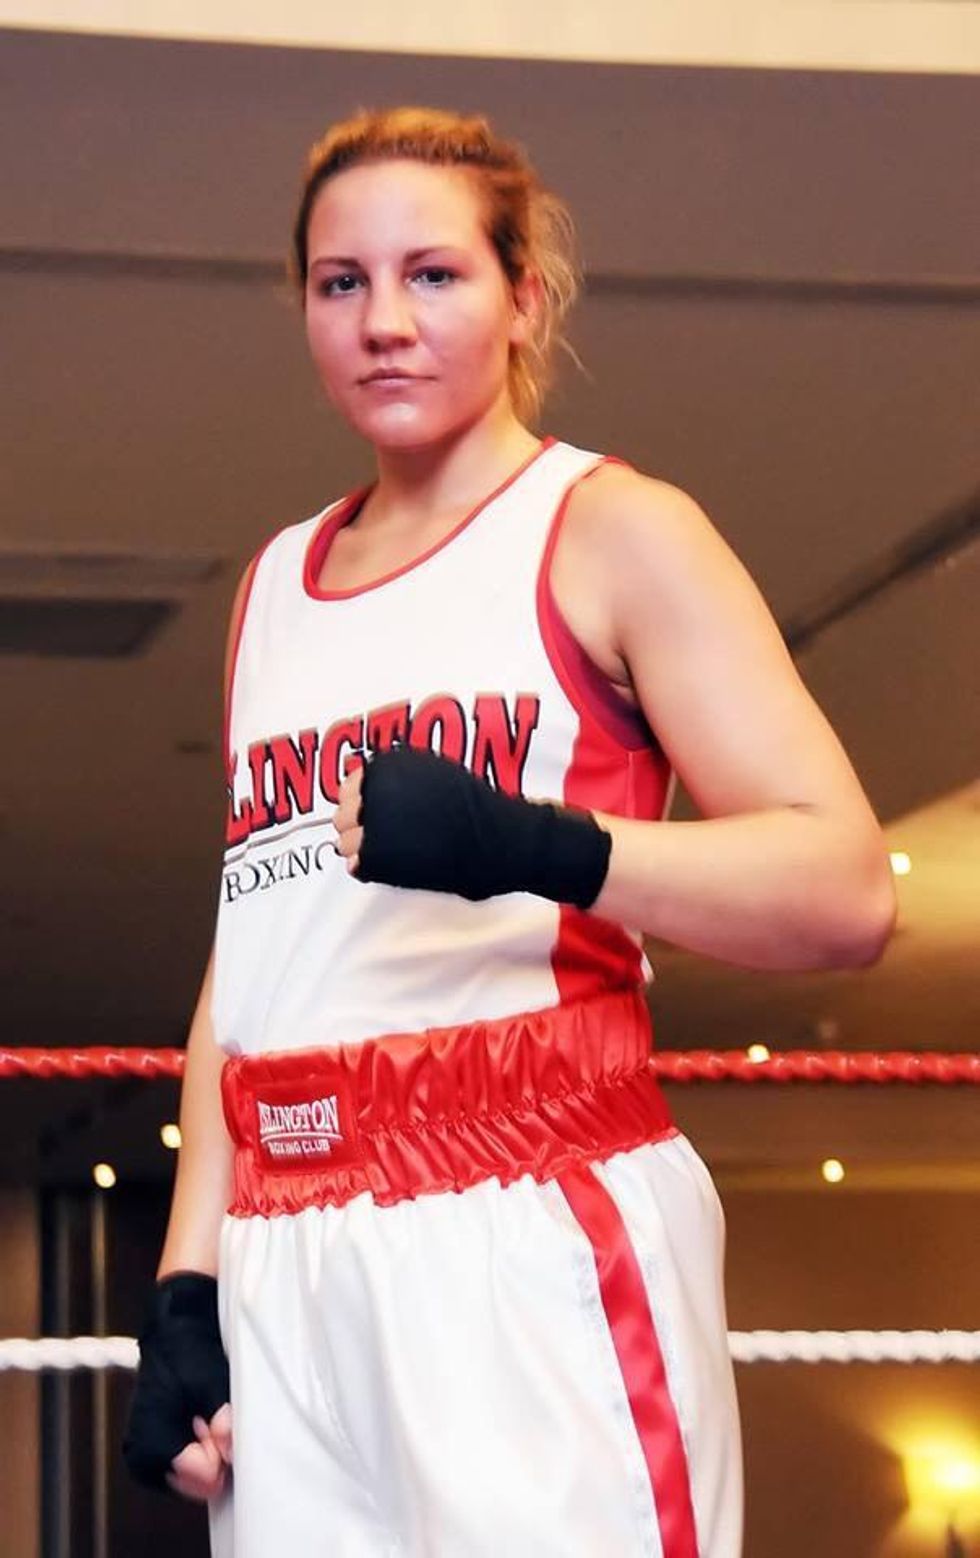 Elena Narozanski - Team England amateur boxer - has resigned as a No 10 special advisor